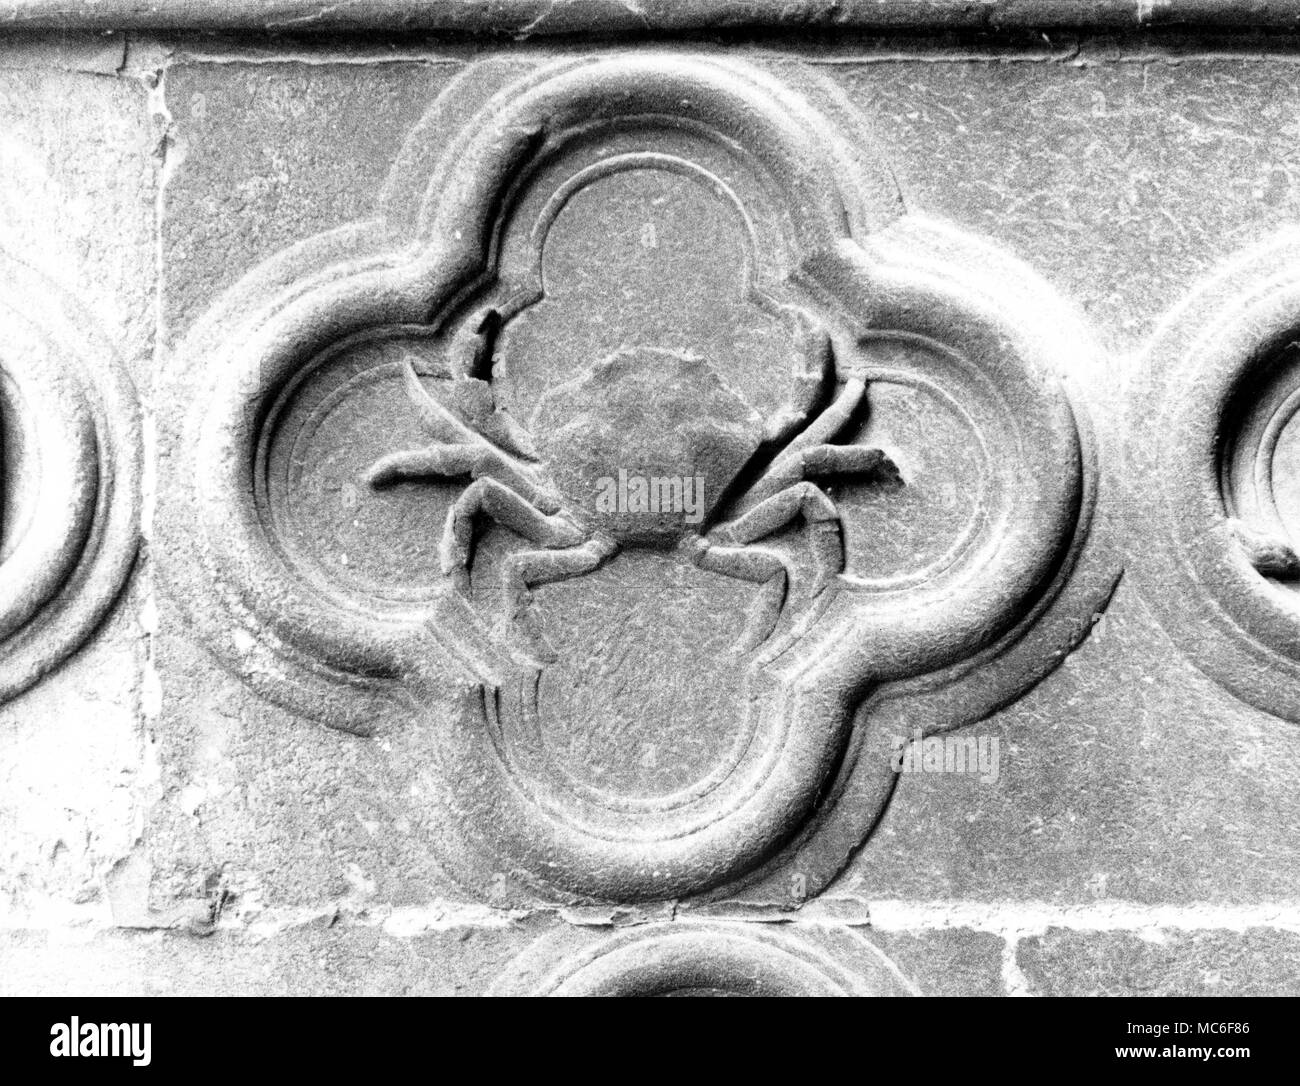 Sternzeichen - Krebs - Bas-Relief der Zeichen Krebs, von den Tierkreiszeichen Serie auf die astrologischen Portal der Kathedrale von Amiens. Frühen vierzehnten Jahrhundert. Stockfoto